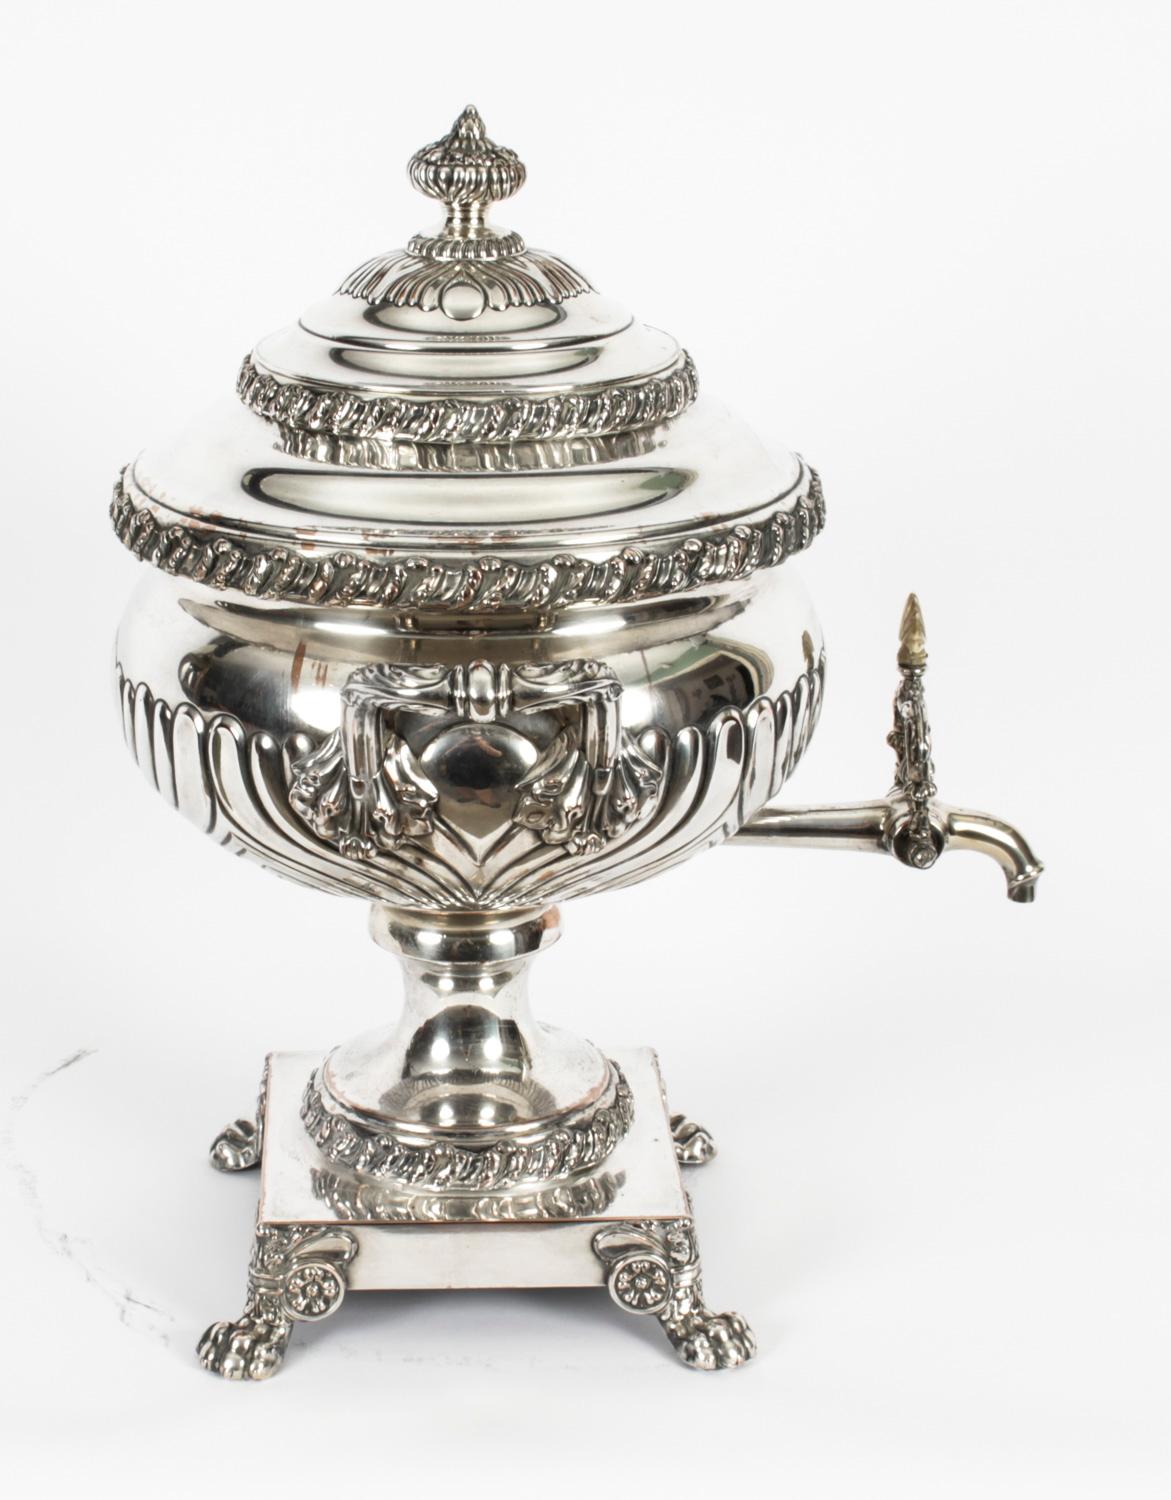 Maravillosa urna de té antigua de la Regencia, chapada en plata de Sheffield, datada hacia 1820.

Este bonito samovar antiguo de Old Sheffield está chapado en plata sobre cobre, con un remate en forma de lengüeta, asas foliadas y un grifo